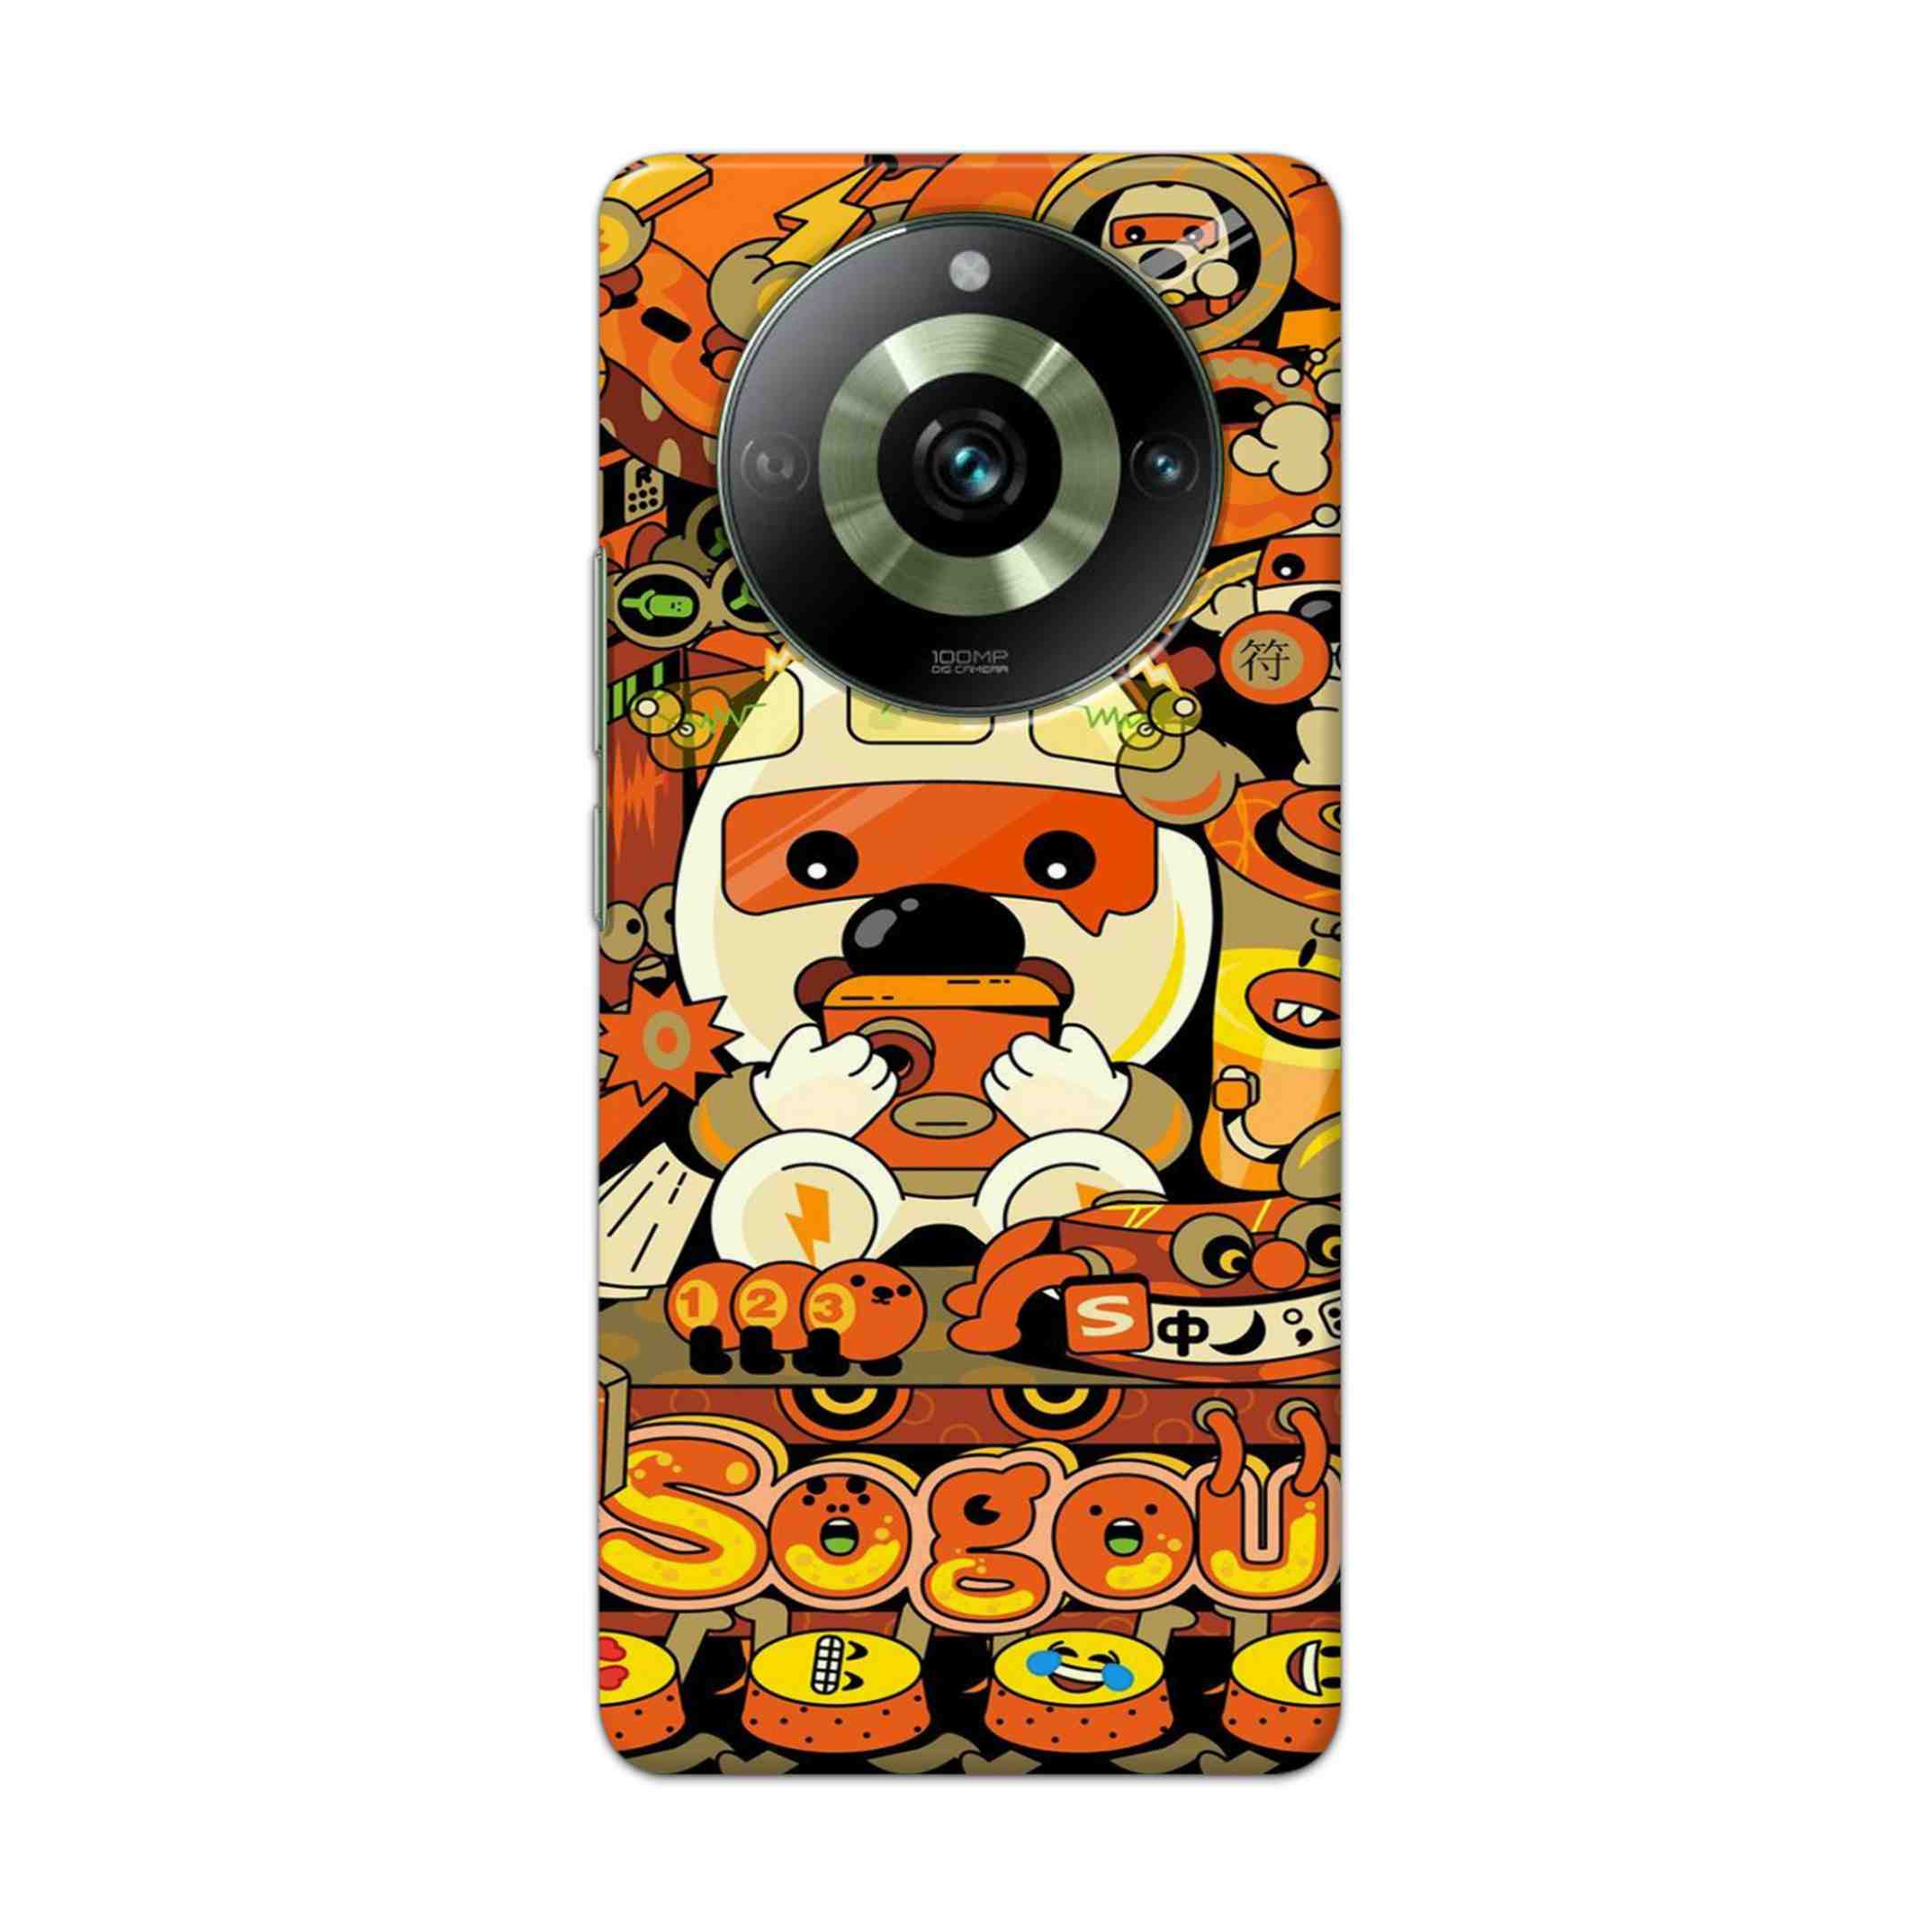 Buy Sogou Hard Back Mobile Phone Case Cover For Realme11 pro5g Online